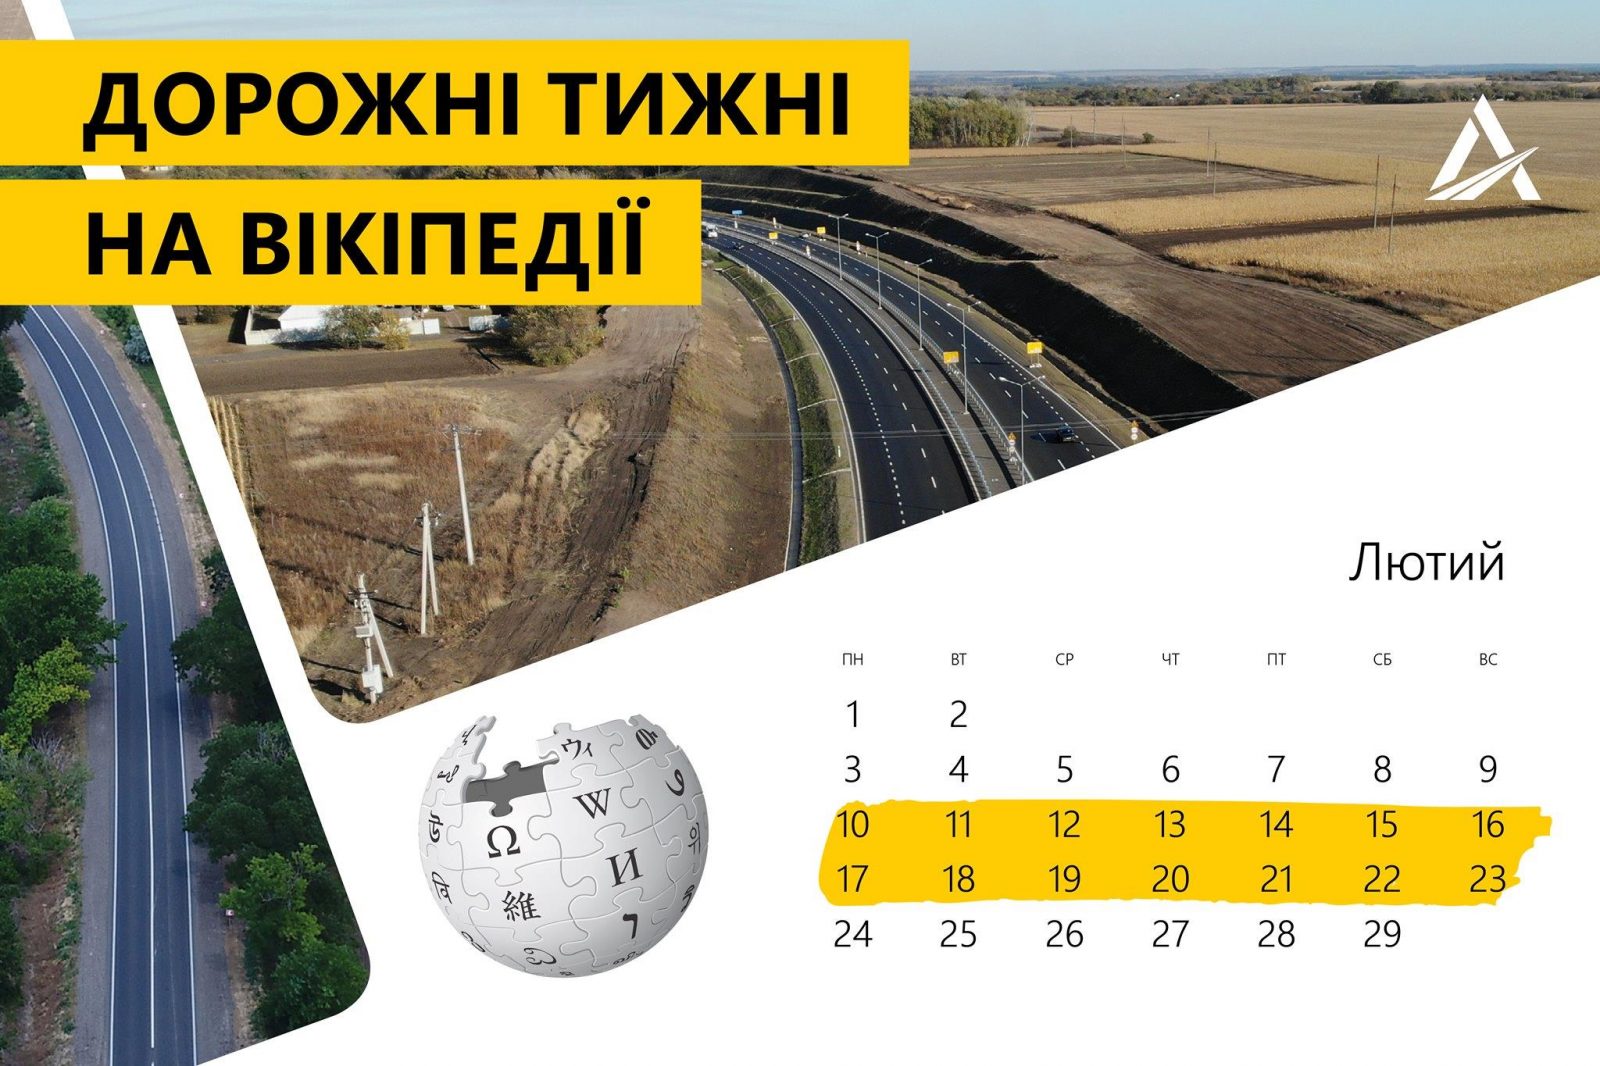 Укравтодор запрошує усіх бажаючих висловитися про українські дороги у вікіпедії